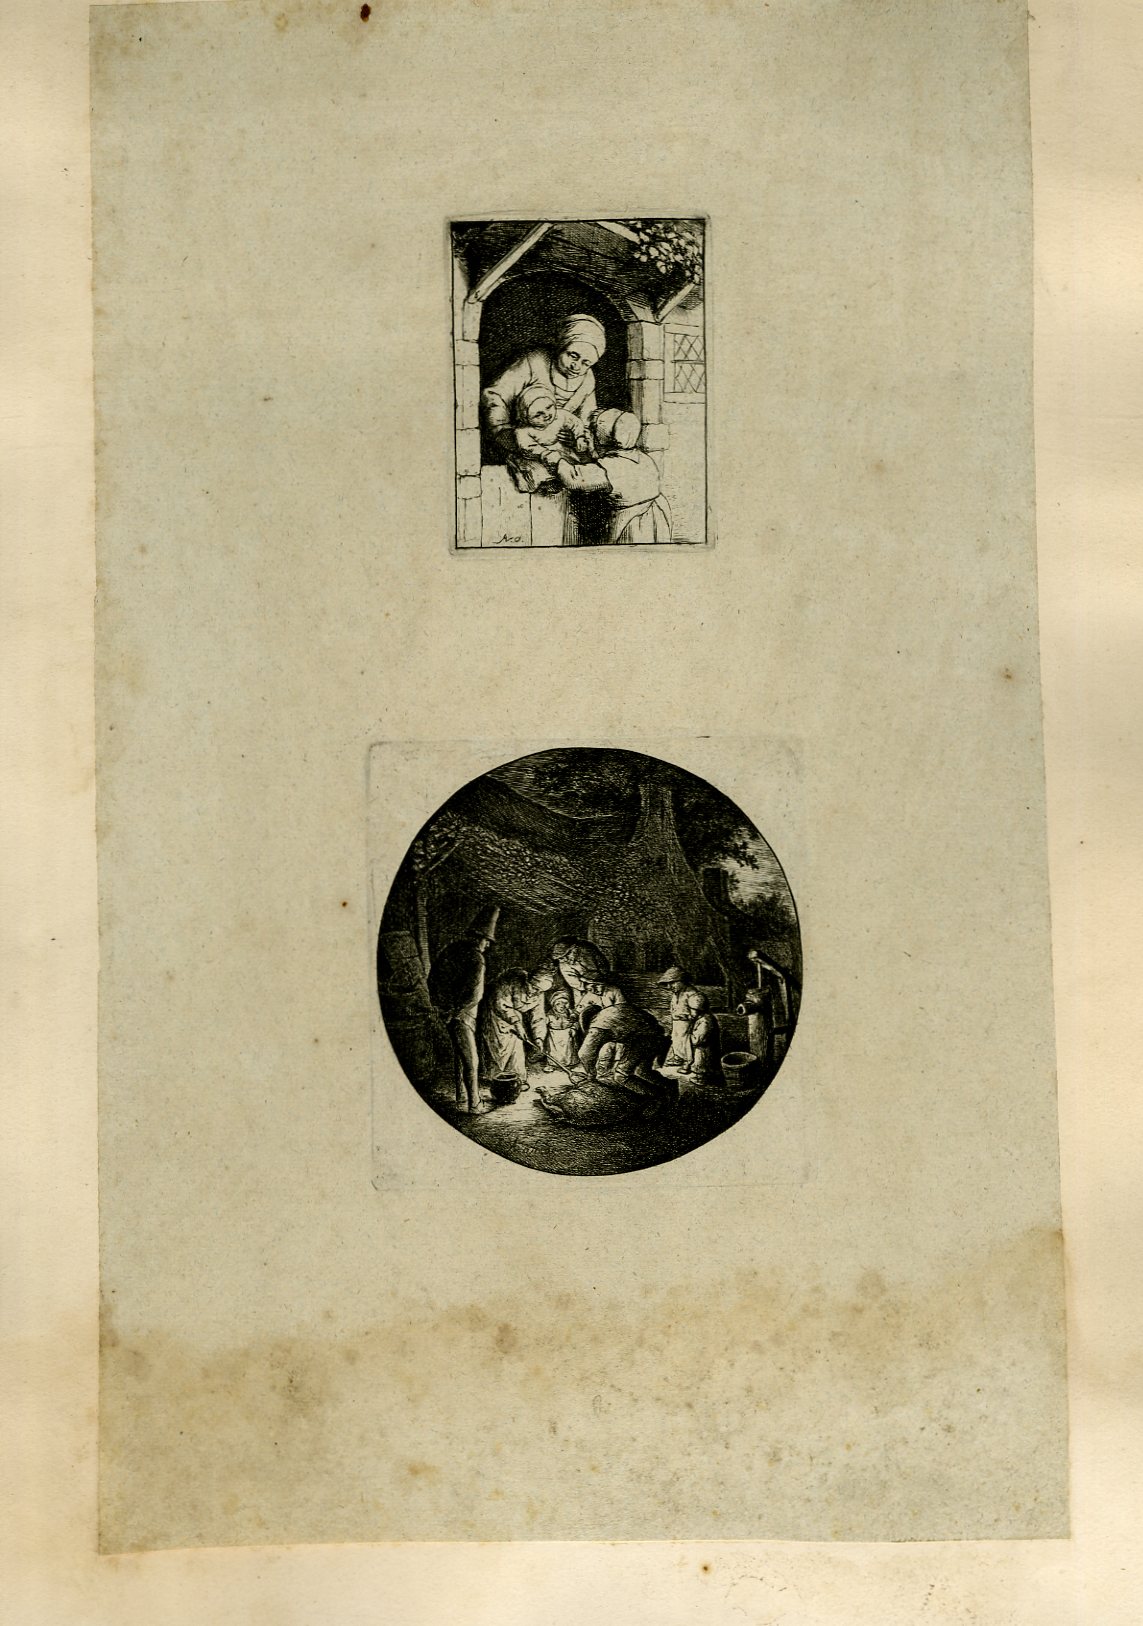 Planche illustre de 2 gravures originales en noir et blanc : Une femme passant son bb par dessus un portique,  sa jeune fille - Vue sur 8 villageois tuant un porc ou sanglier  la tombe de la nuit